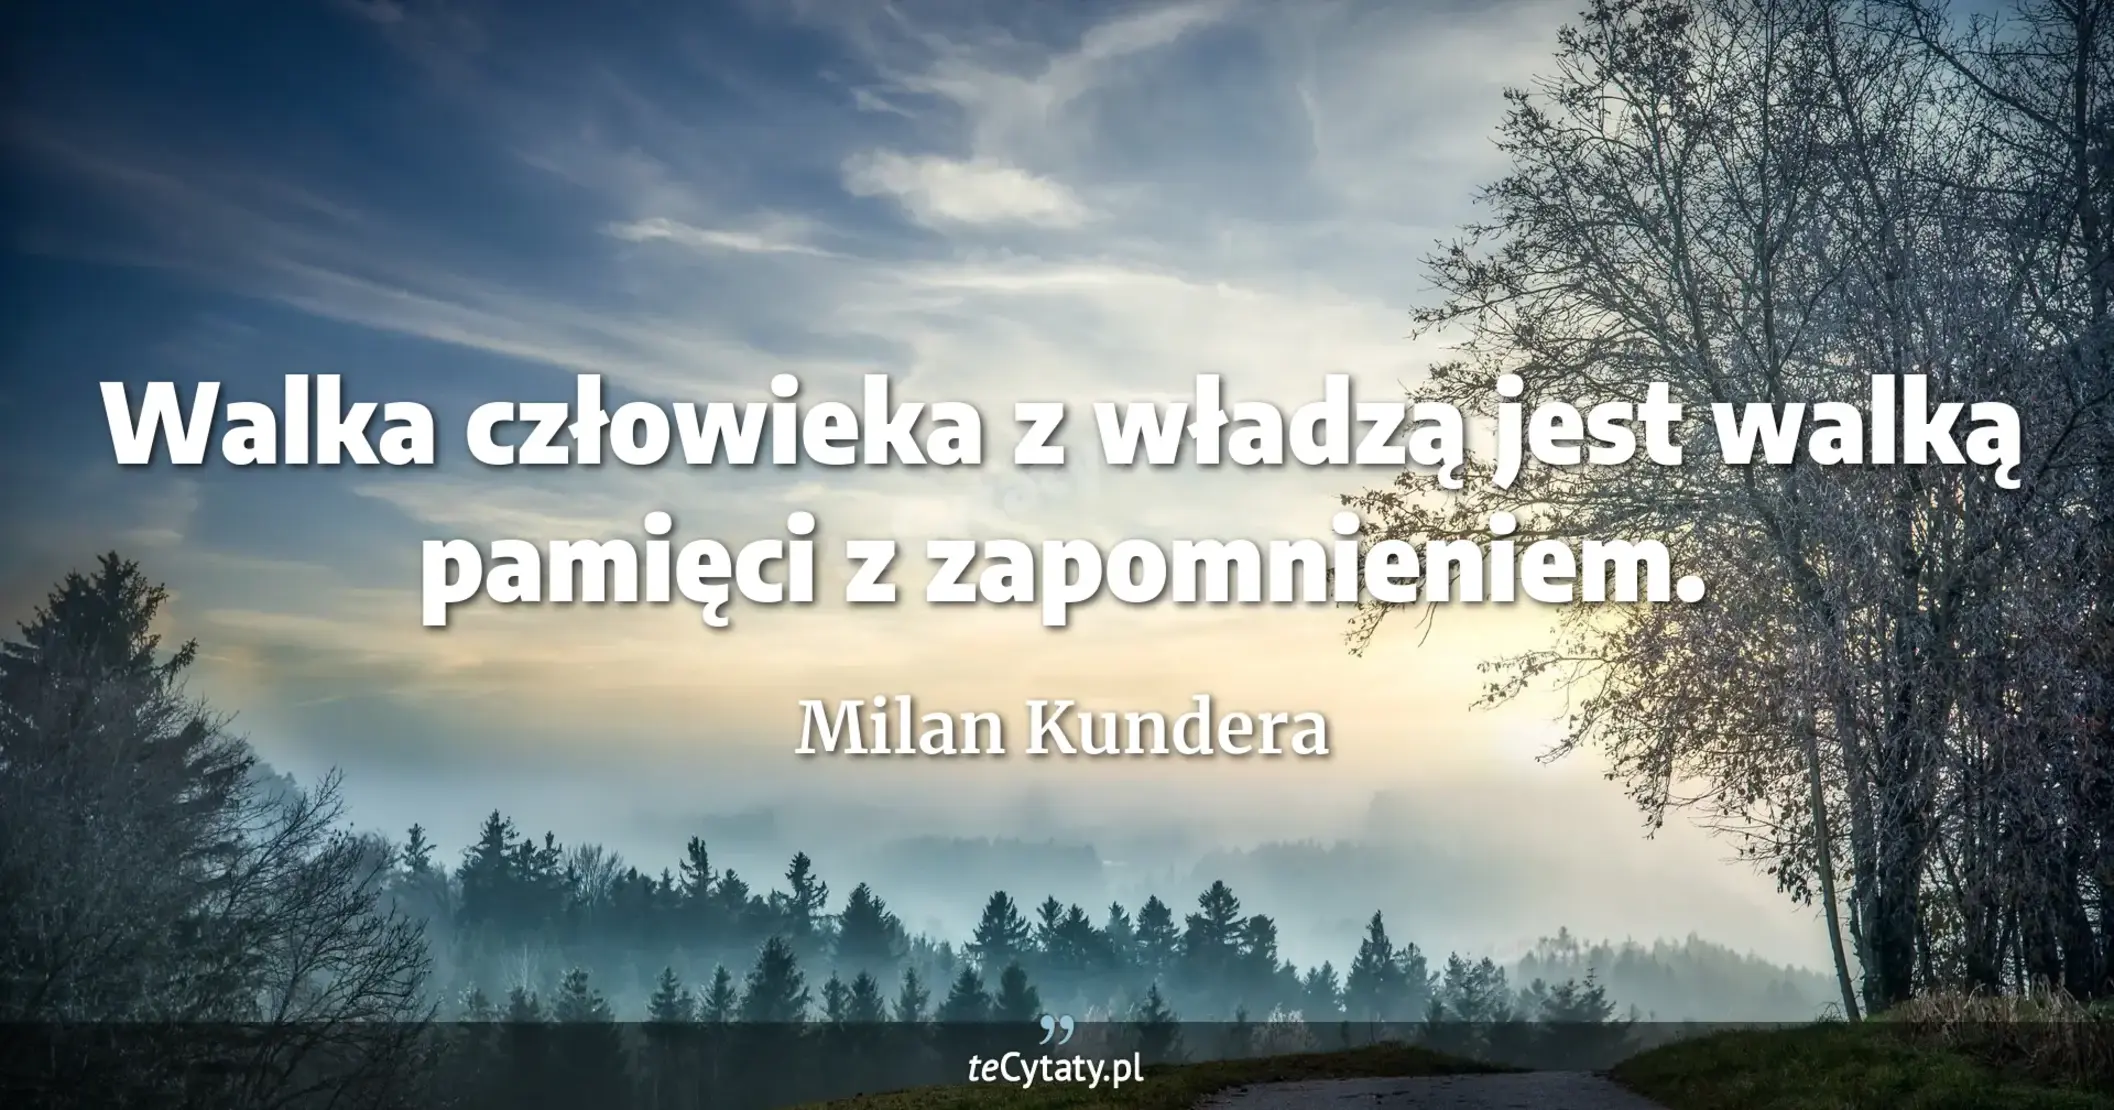 Walka człowieka z władzą jest walką pamięci z zapomnieniem. - Milan Kundera